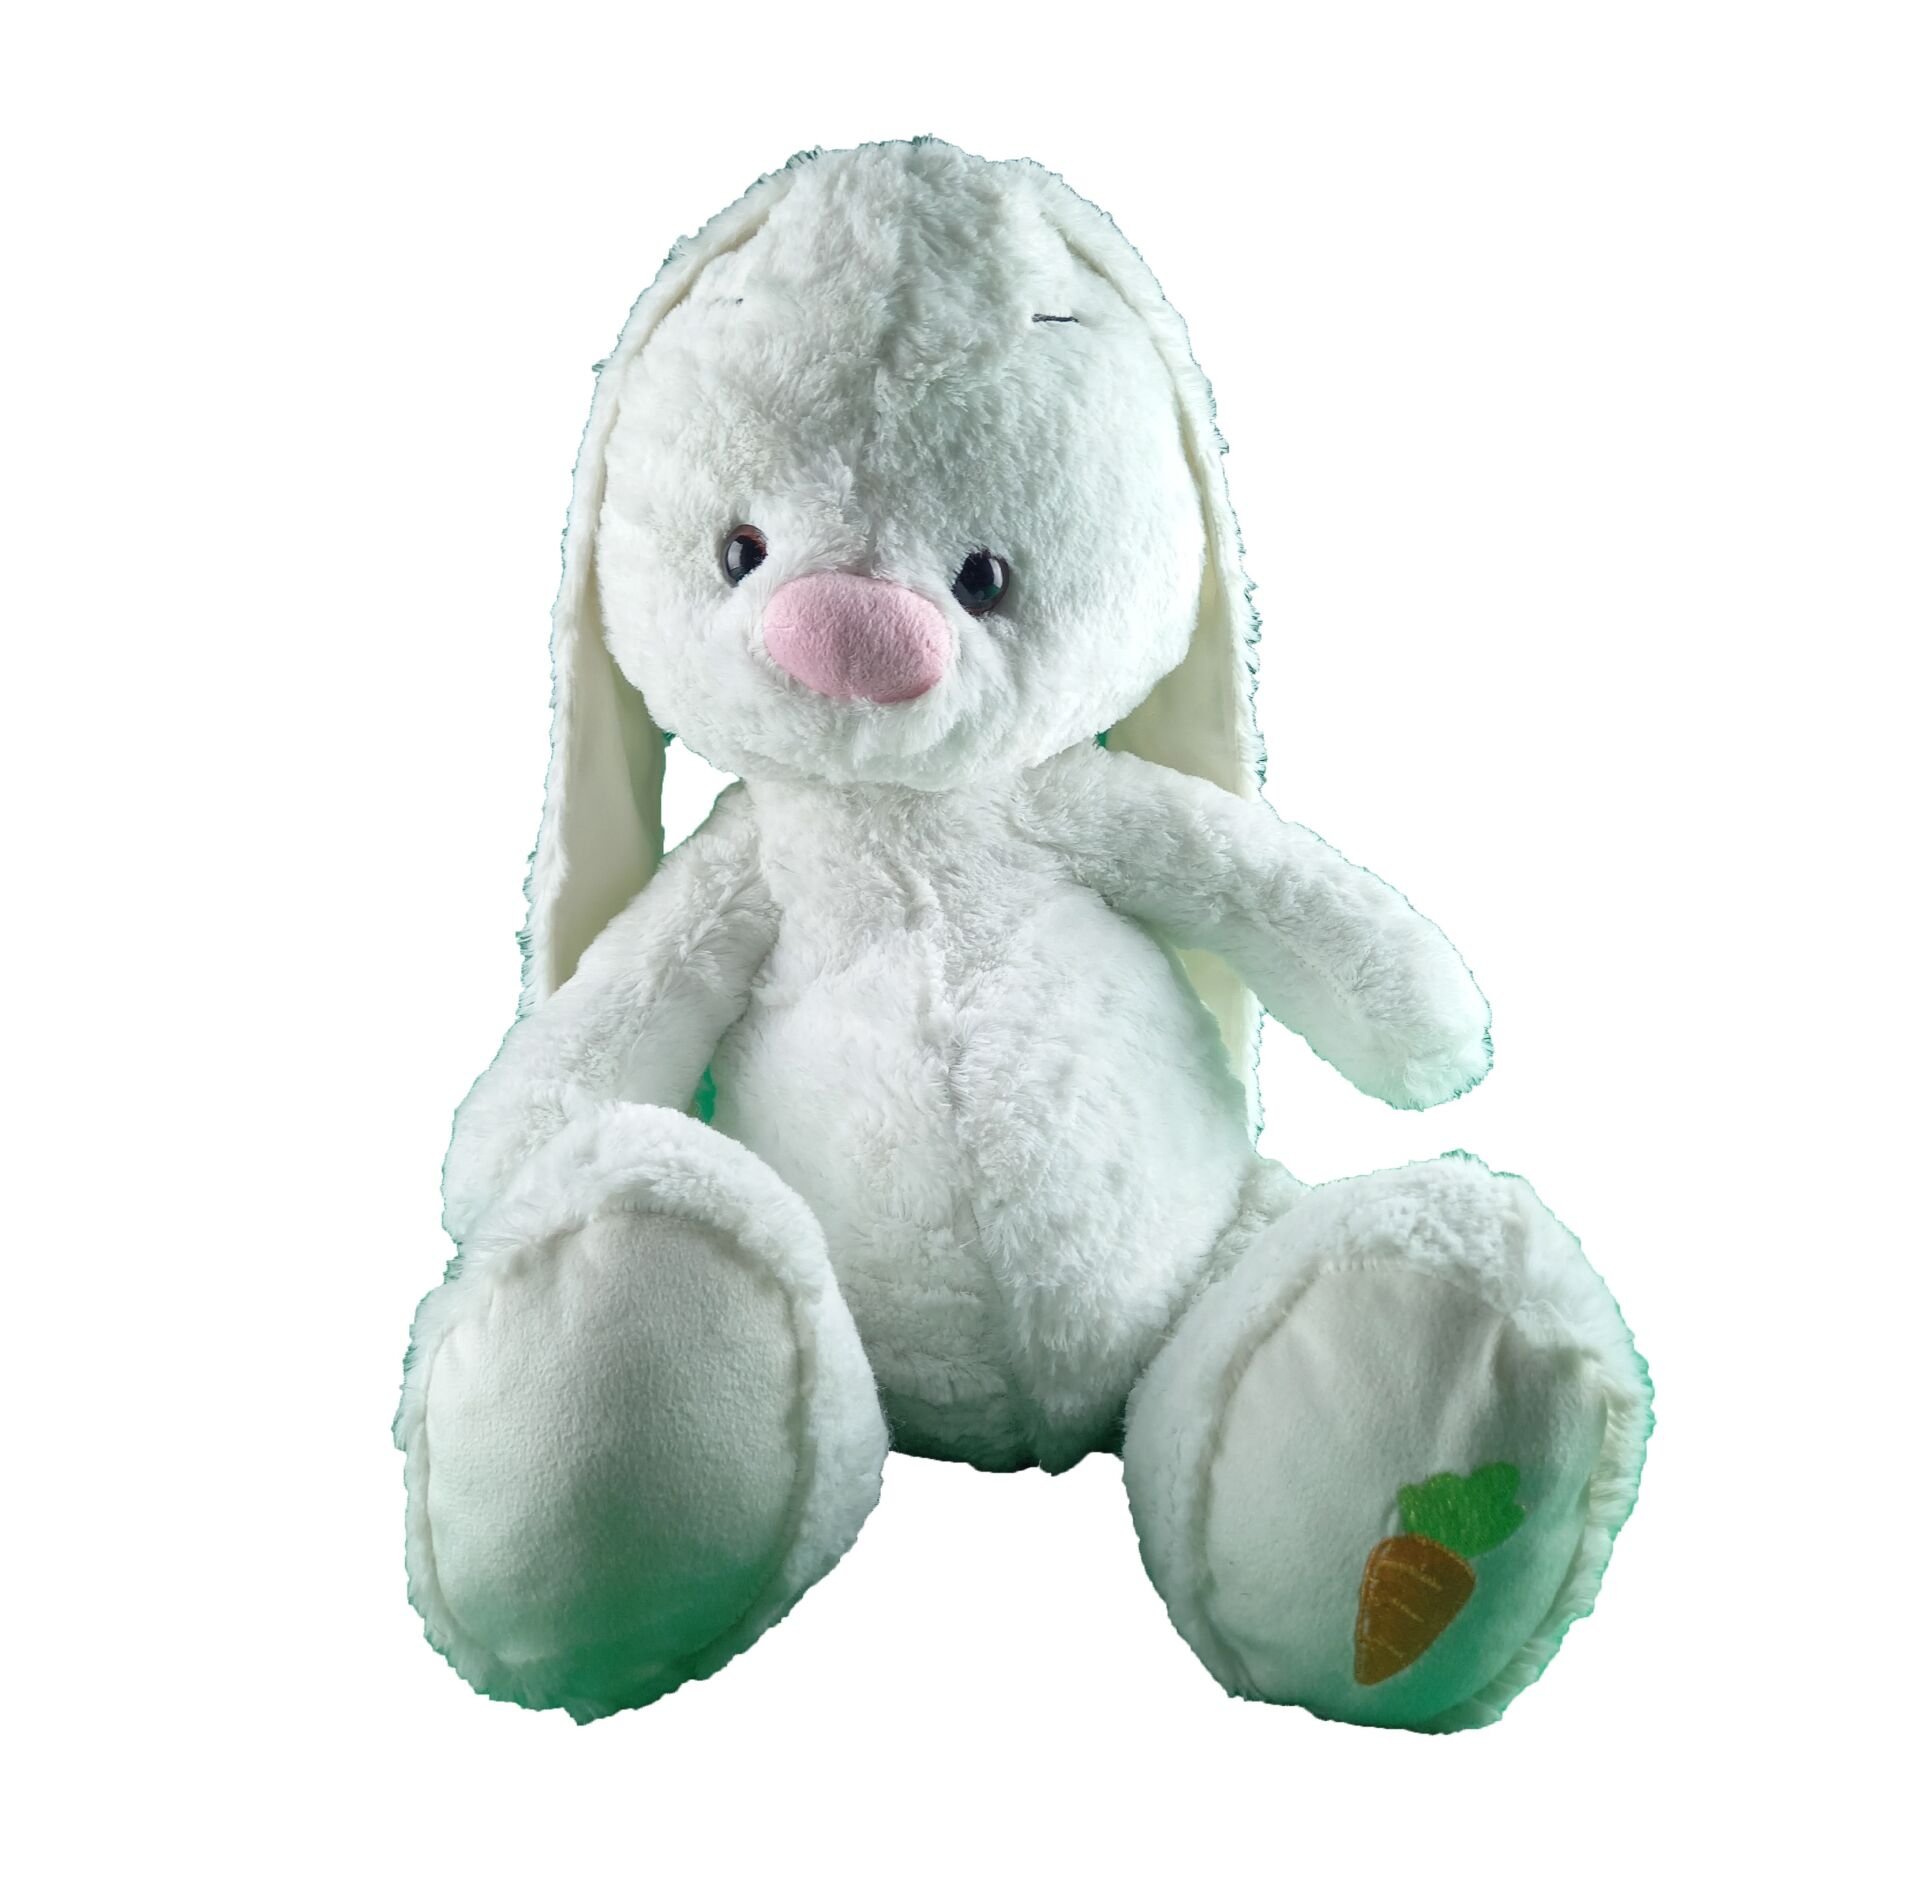 Oturakçı Toys Peluş Tavşan 03010